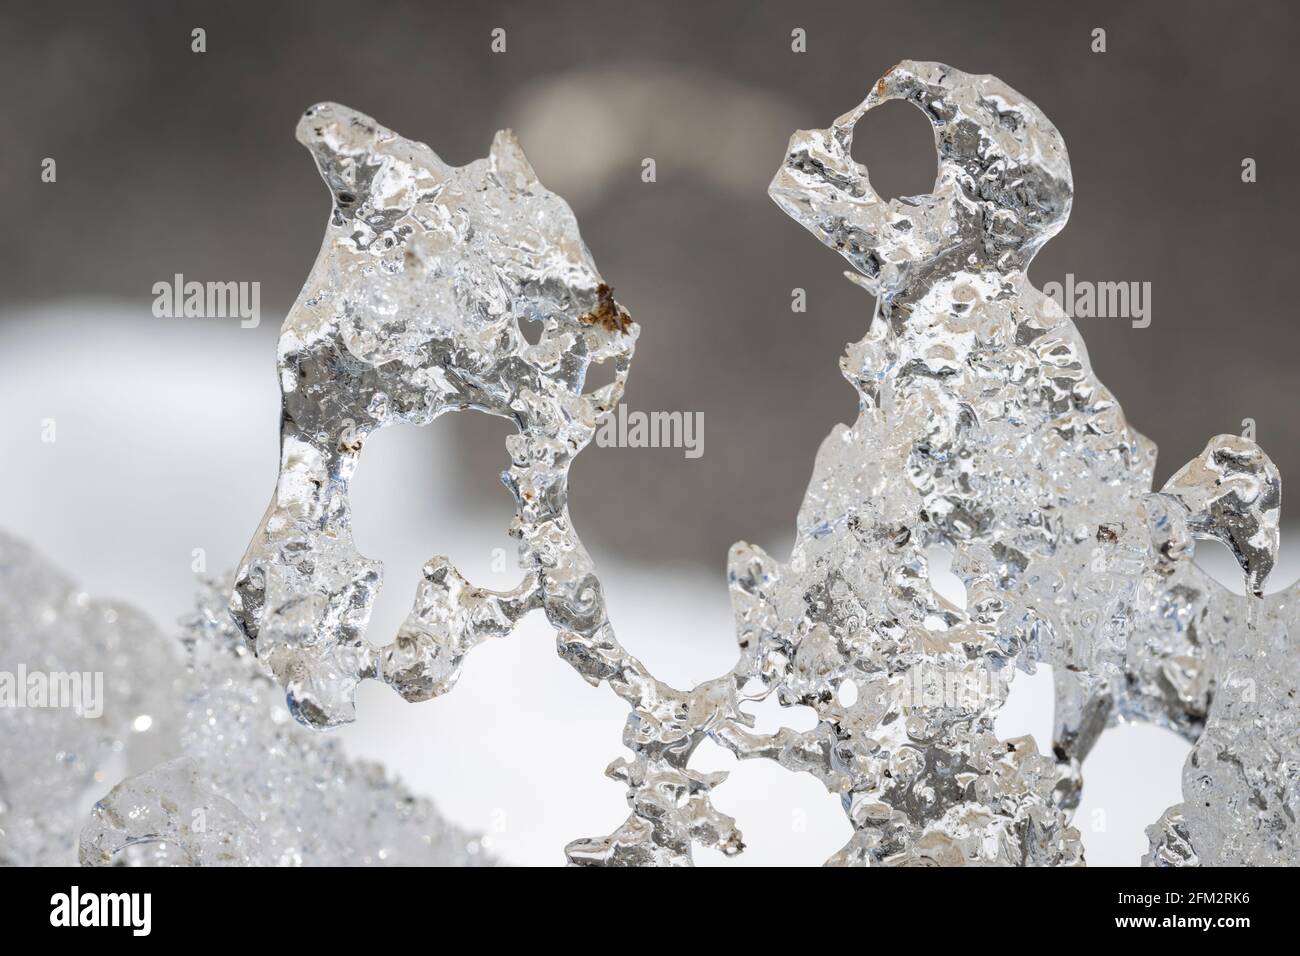 ice crystals in Hochsoelden in Oetztal, Austria Stock Photo